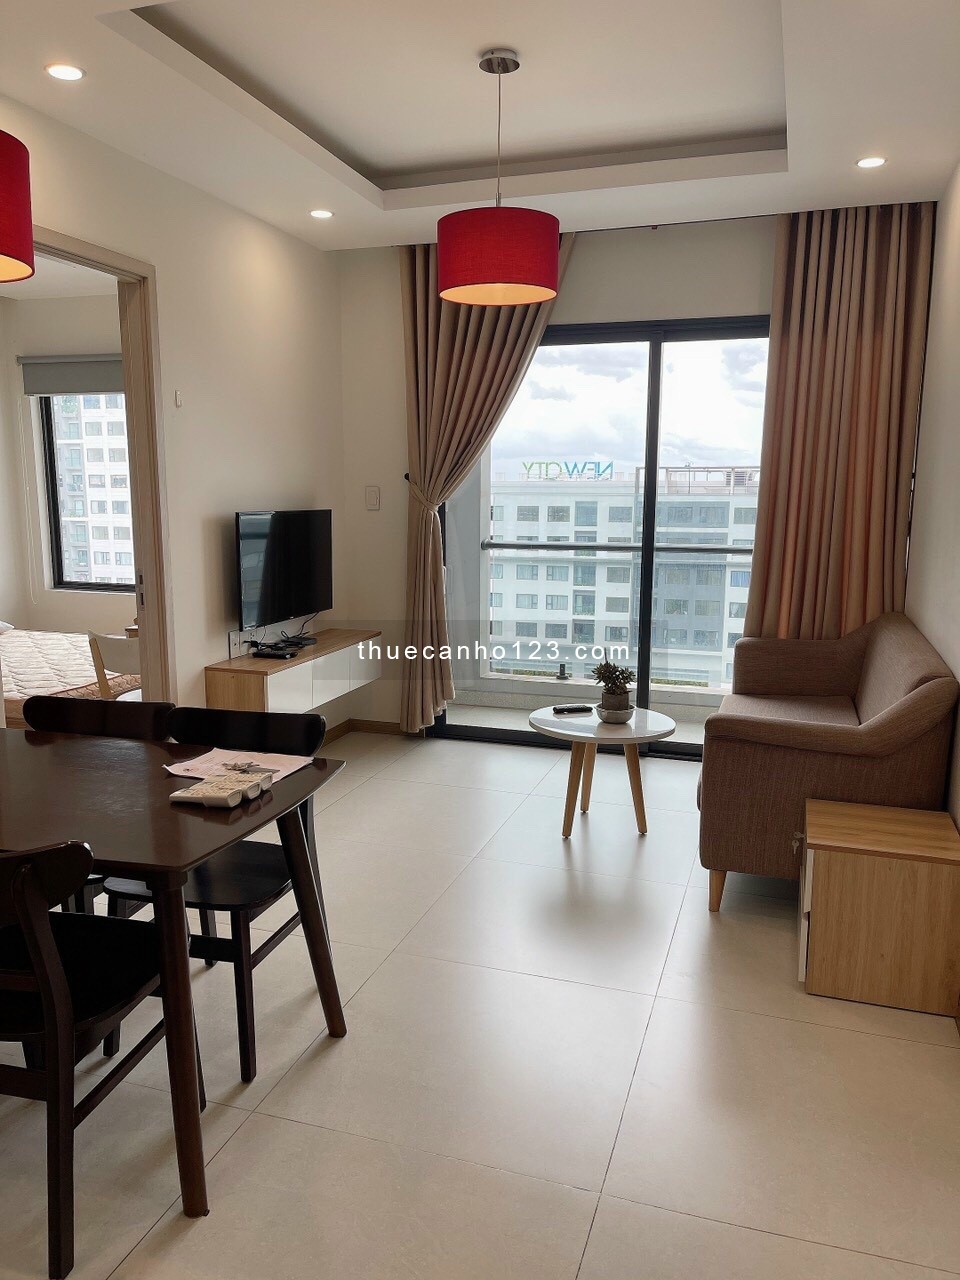 Cần cho thuê chung cư New City Thủ Thiêm, 2PN 75m2 full nội thất, giá 15.000.000 VND